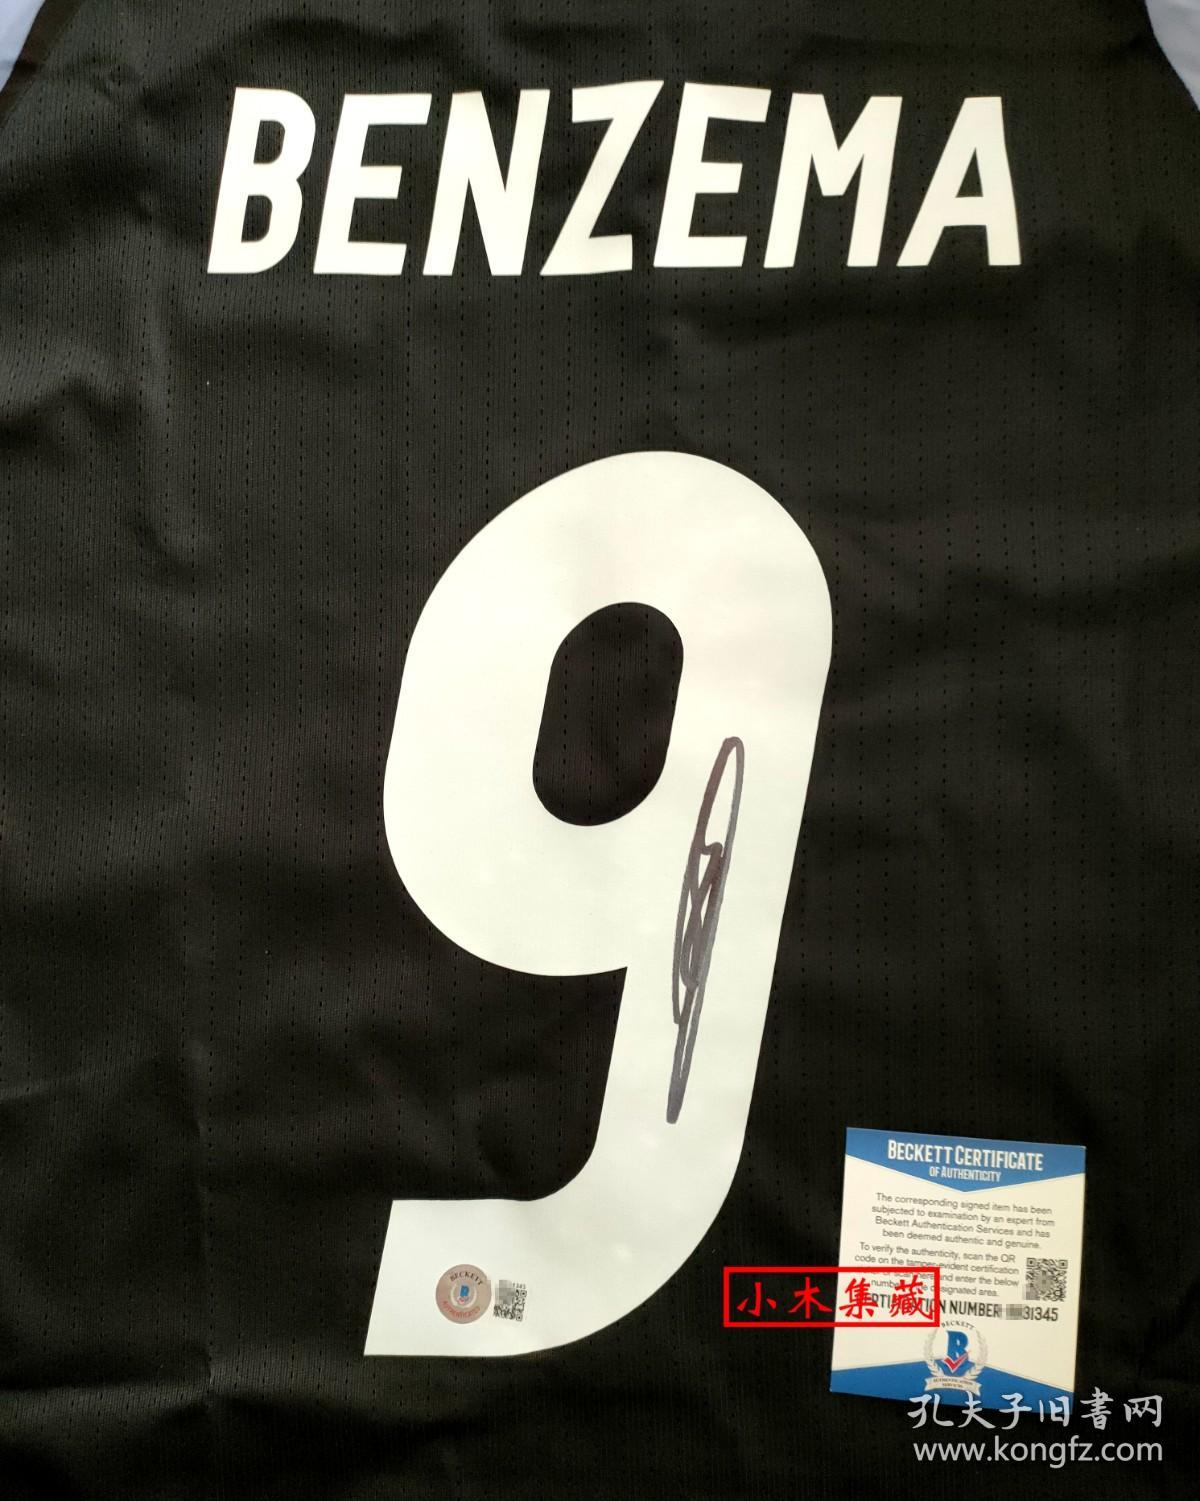 “法国著名球星” 本泽马 亲笔签名Addidas皇马16/17赛季球衣 由三大签名鉴定公司之一Beckett（BAS）提供鉴定